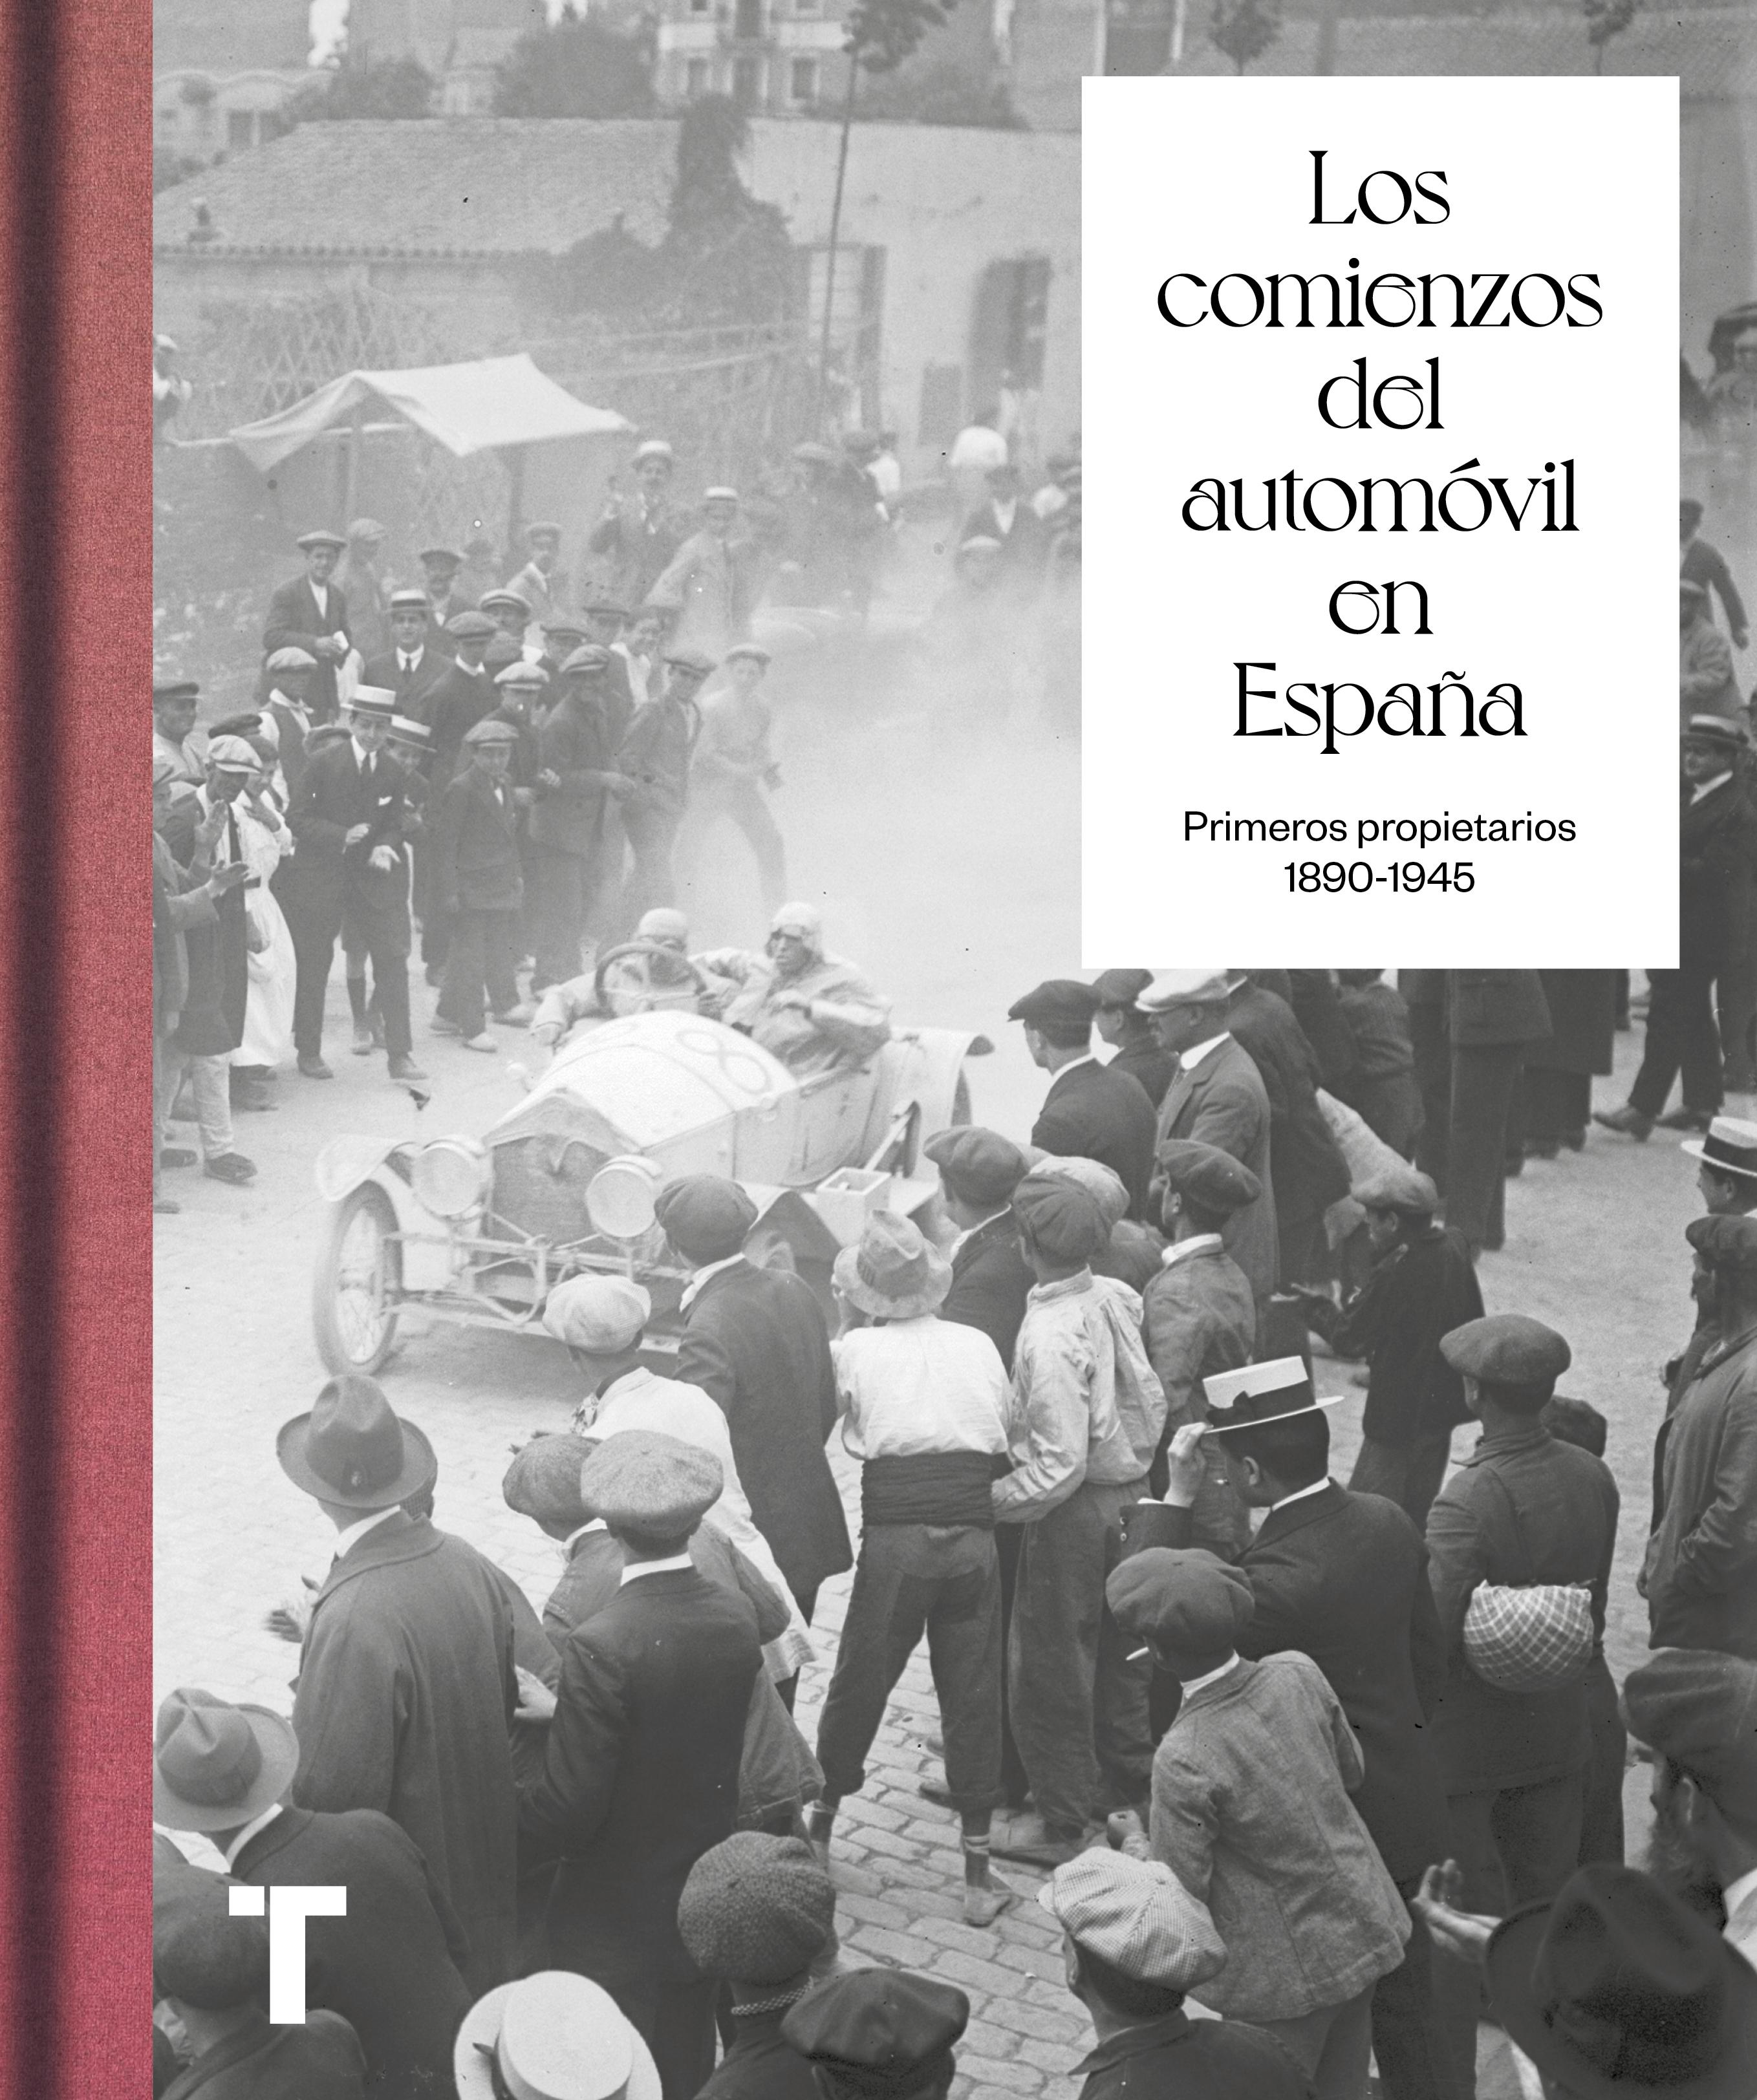 Comienzos del automóvil en España, Los "Primeros propietarios 1890-1945"